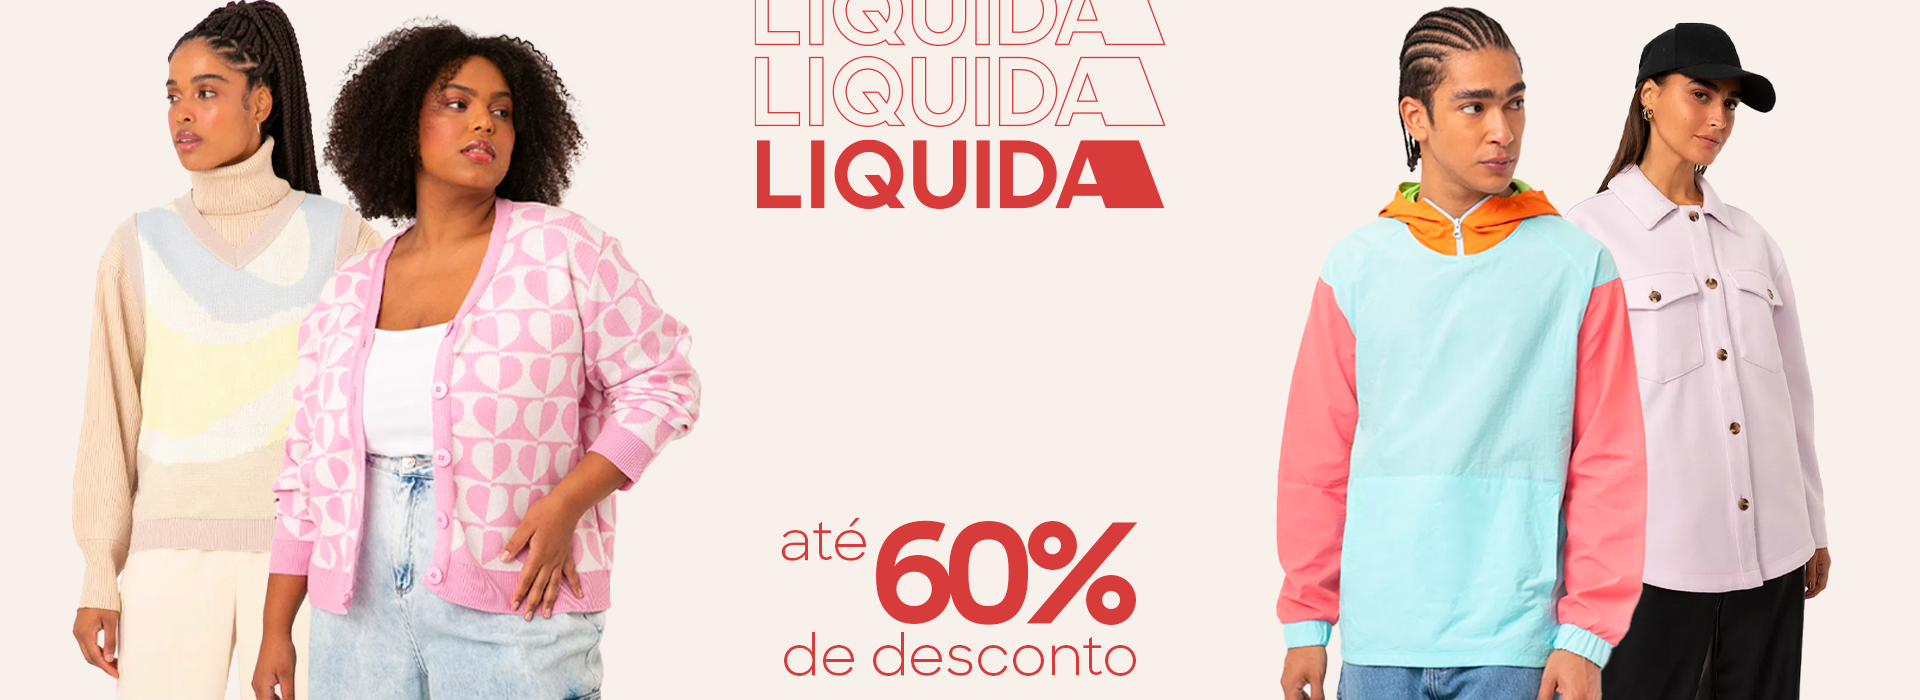 Liquida C&A: descontos de até 60%